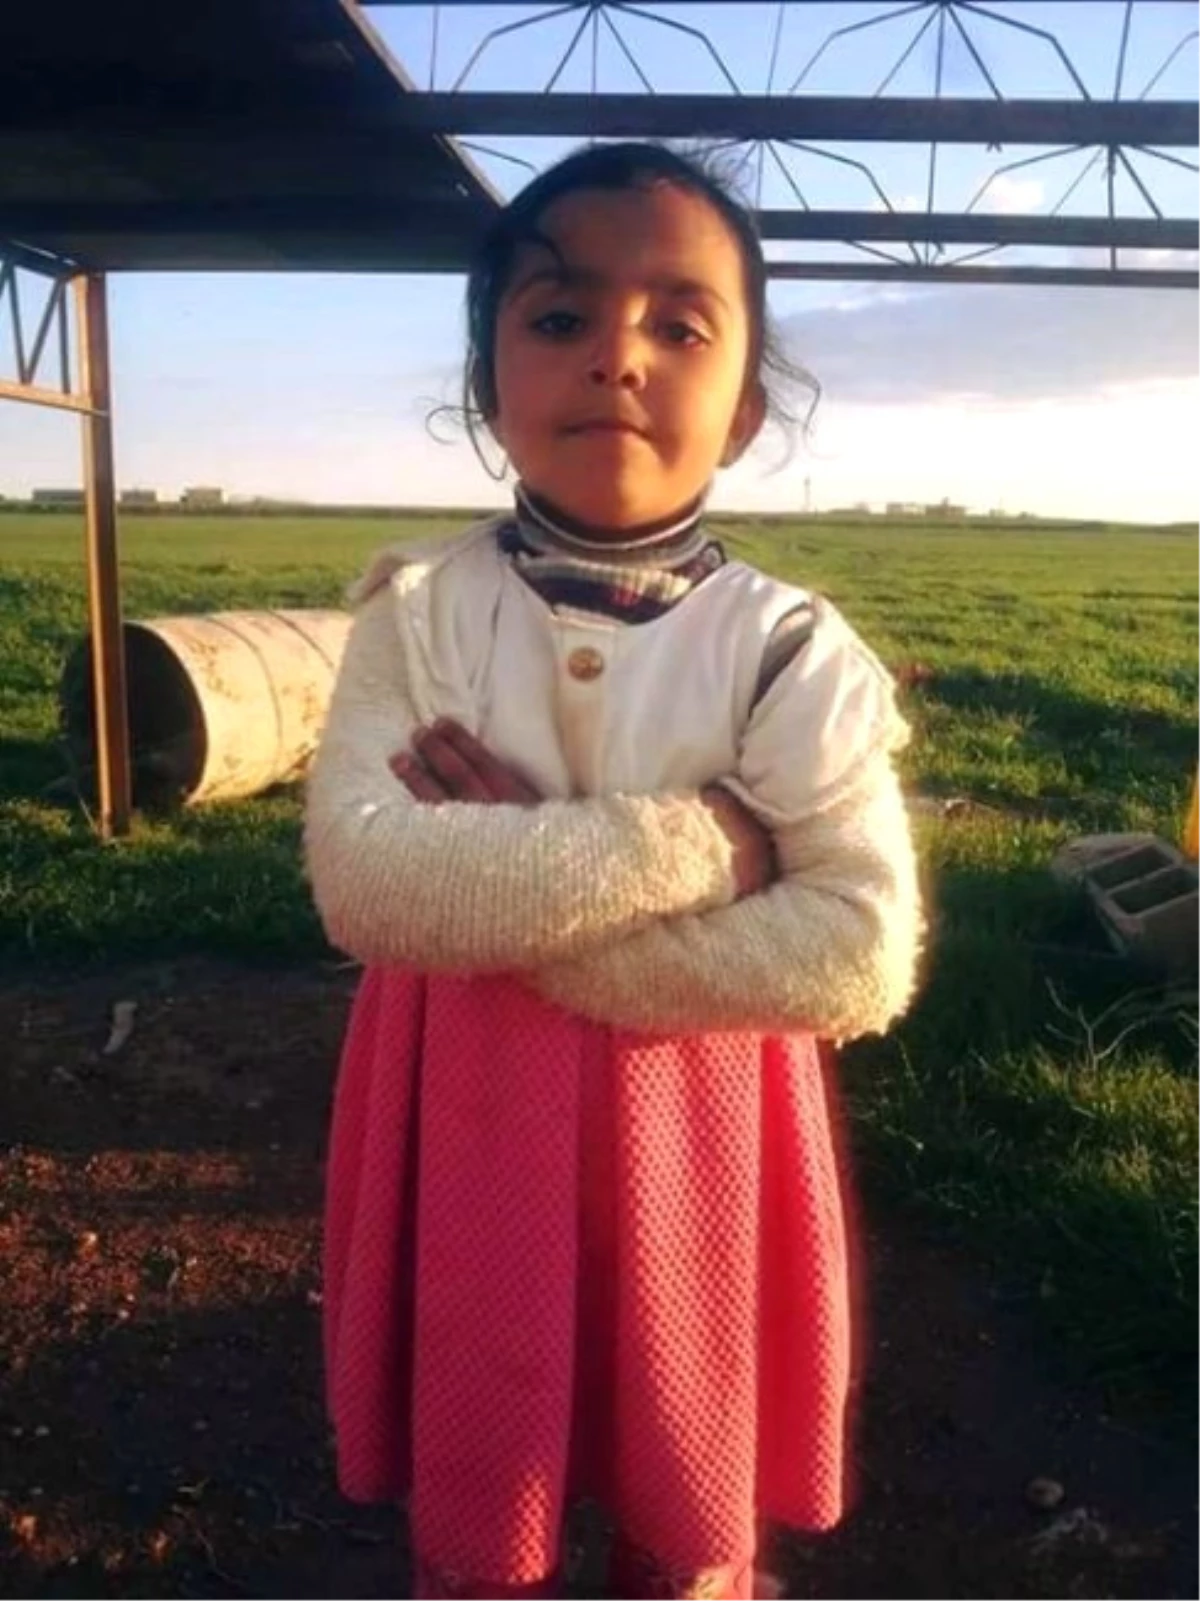 31 Saat Sonra Sondaj Kuyusundan Cenazesi Çıkarılan Küçük Kıza Otopsi Yapıldı